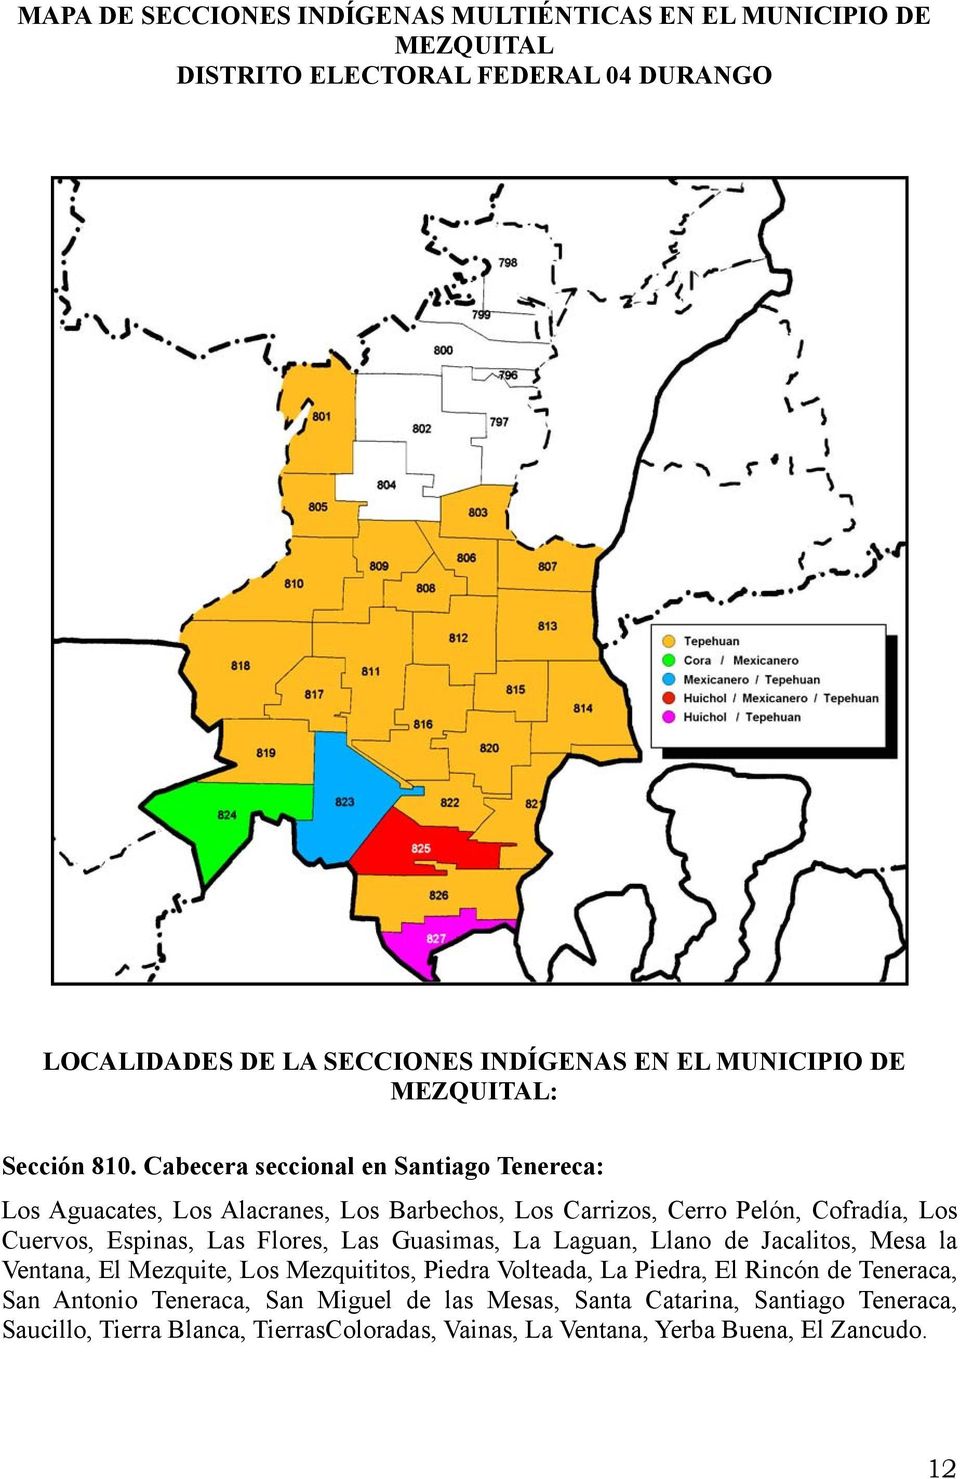 Cabecera seccional en Santiago Tenereca: Los Aguacates, Los Alacranes, Los Barbechos, Los Carrizos, Cerro Pelón, Cofradía, Los Cuervos, Espinas, Las Flores, Las